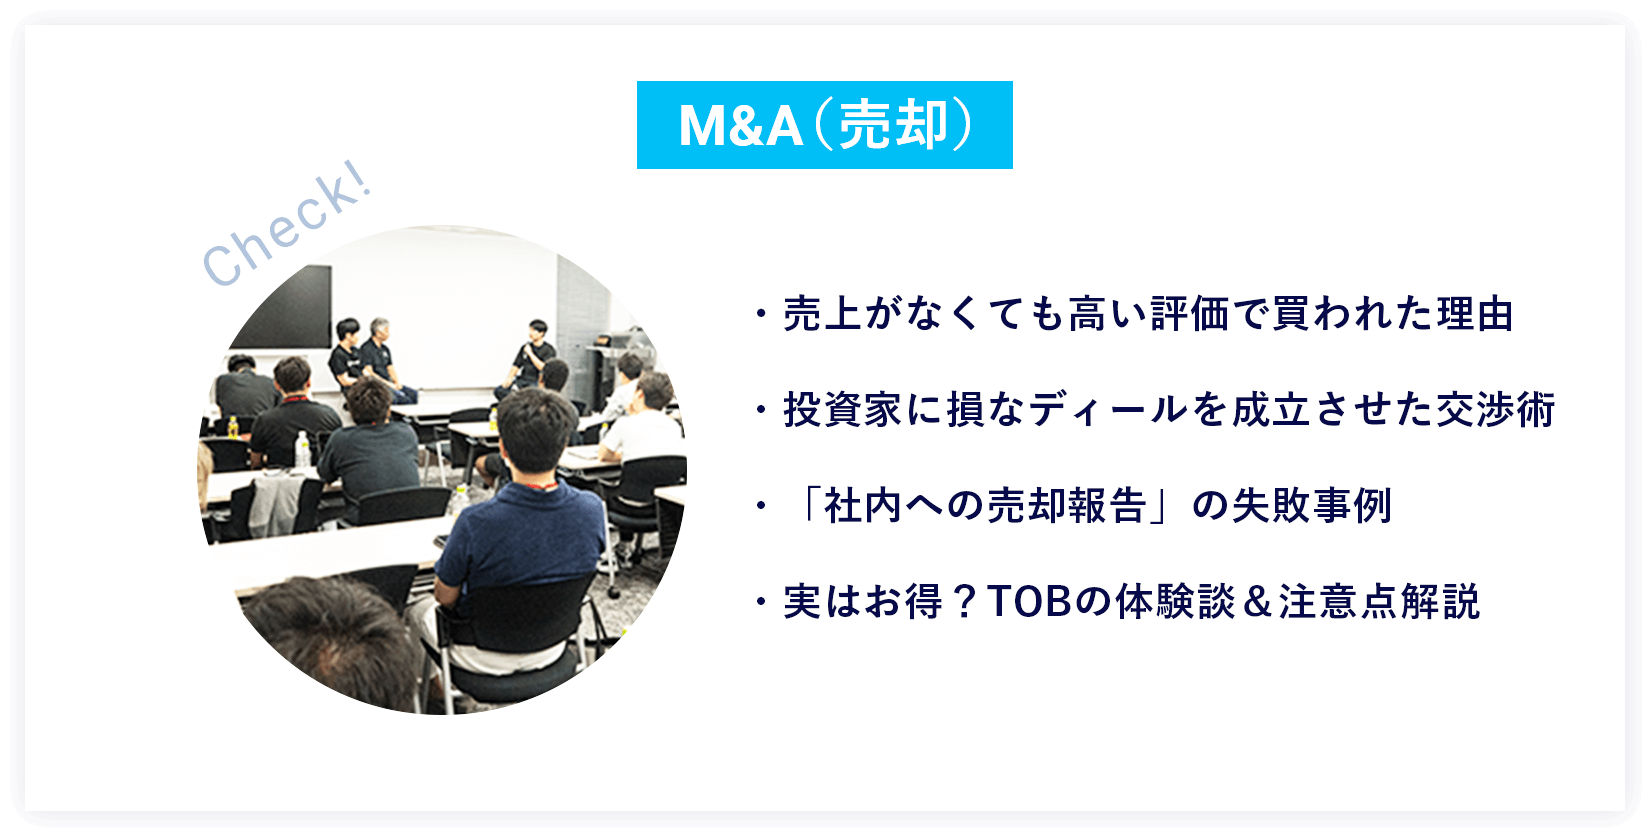 M&A（売却）